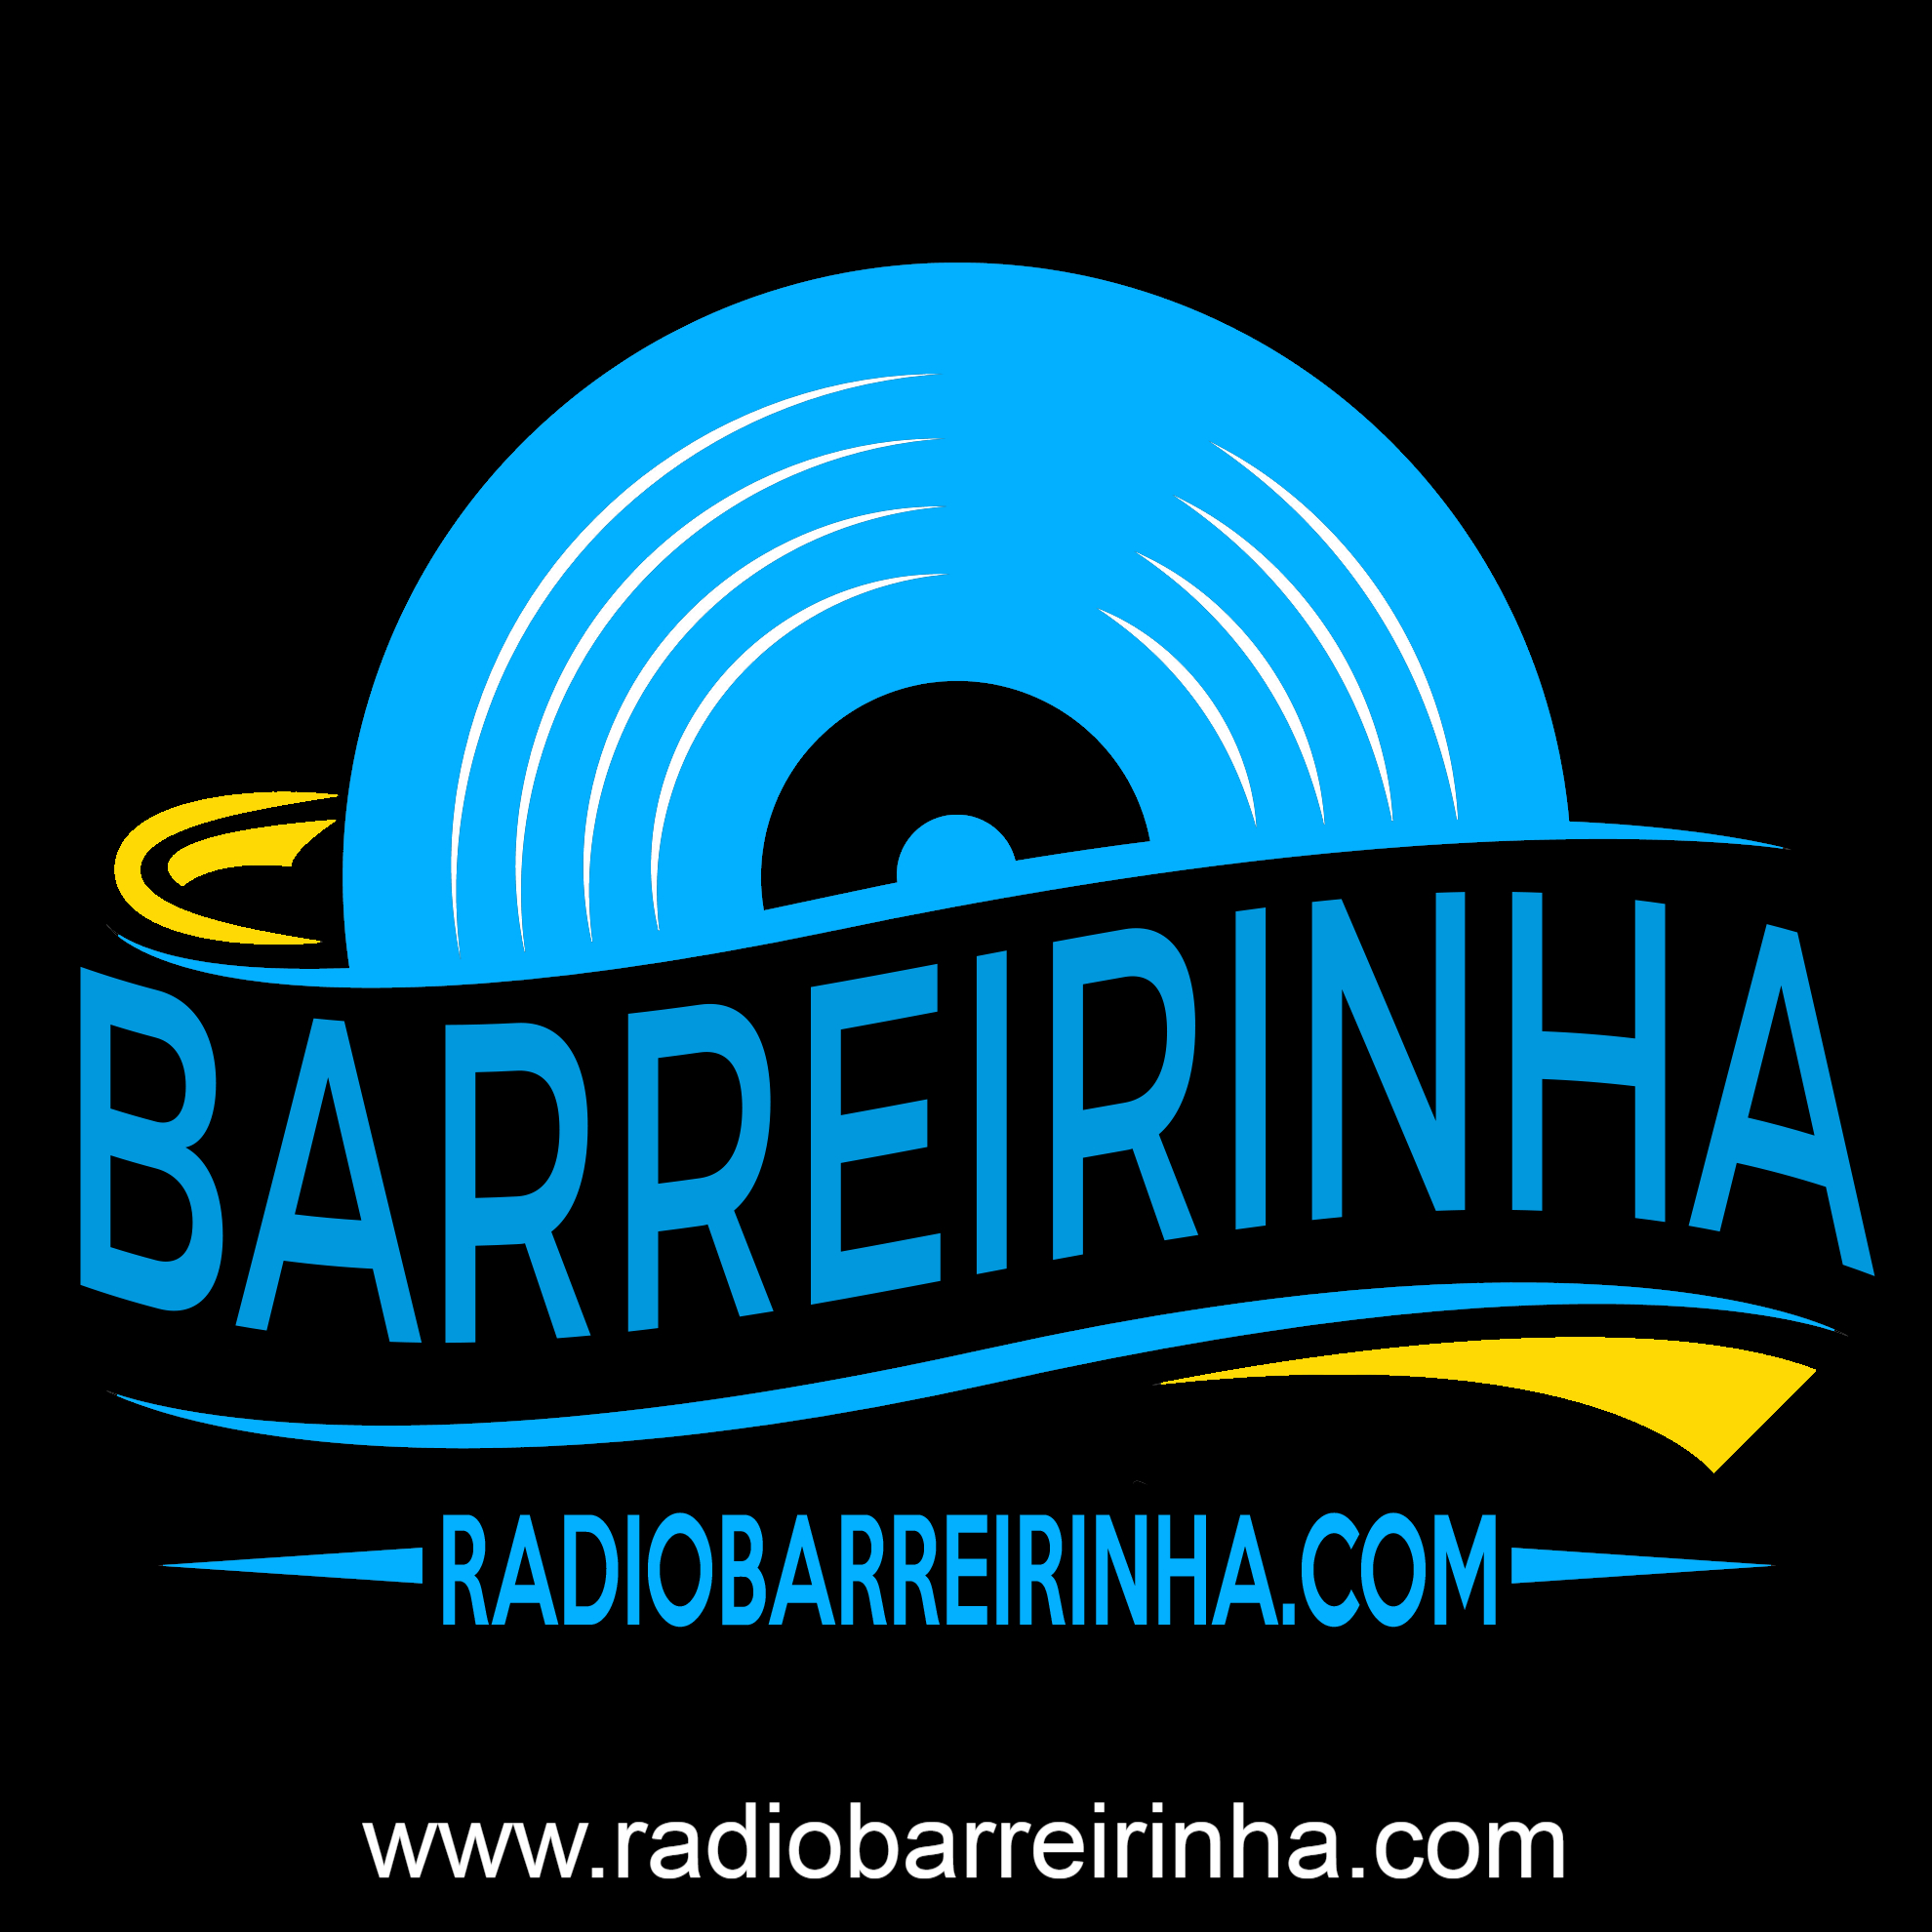 RADIO BARREIRINHA